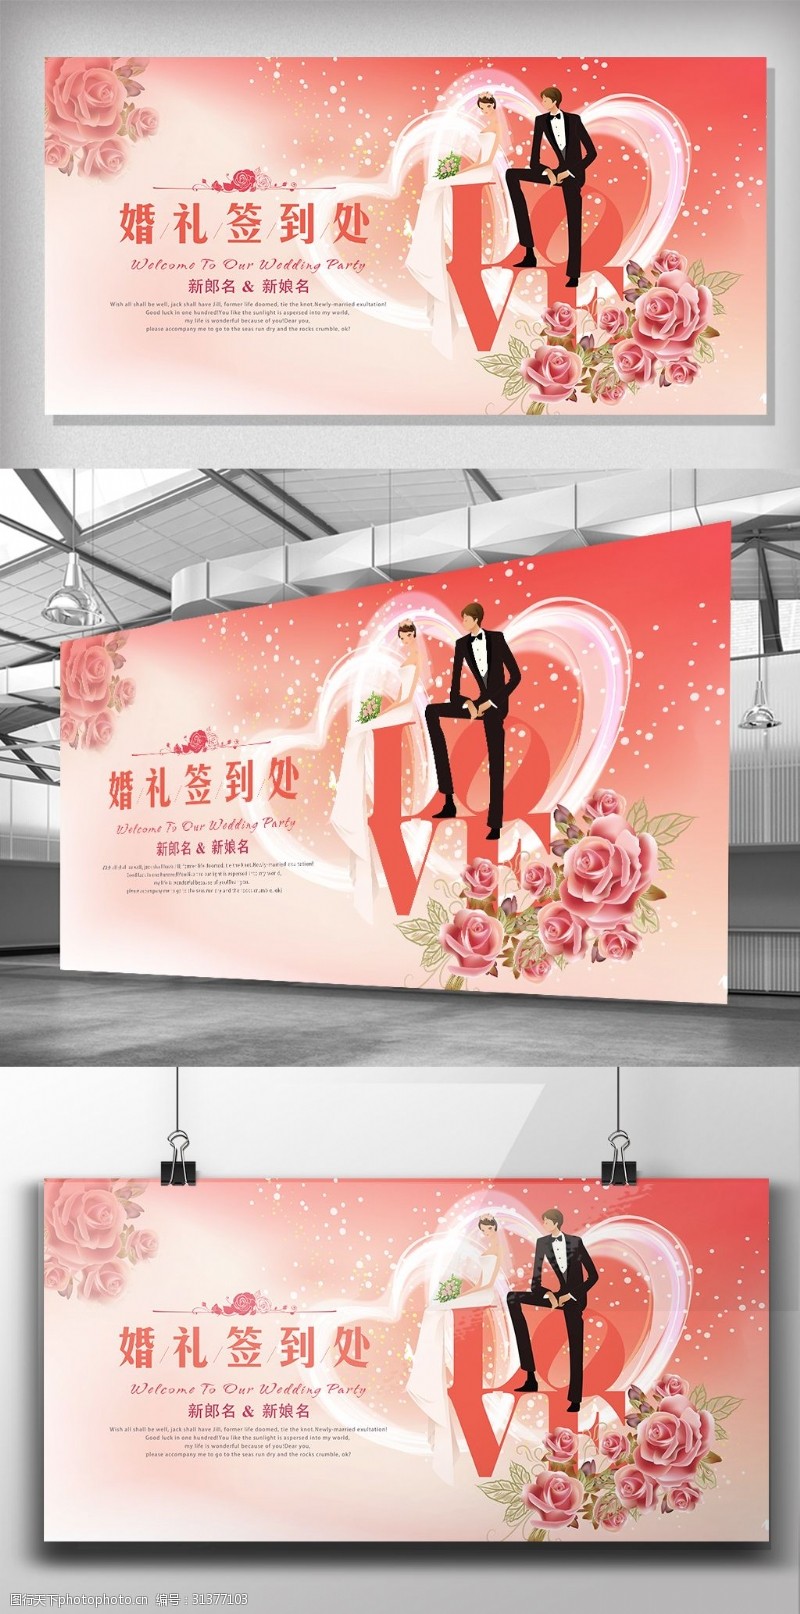 婚庆海报素材下载浪漫婚礼庆典签到中心展板